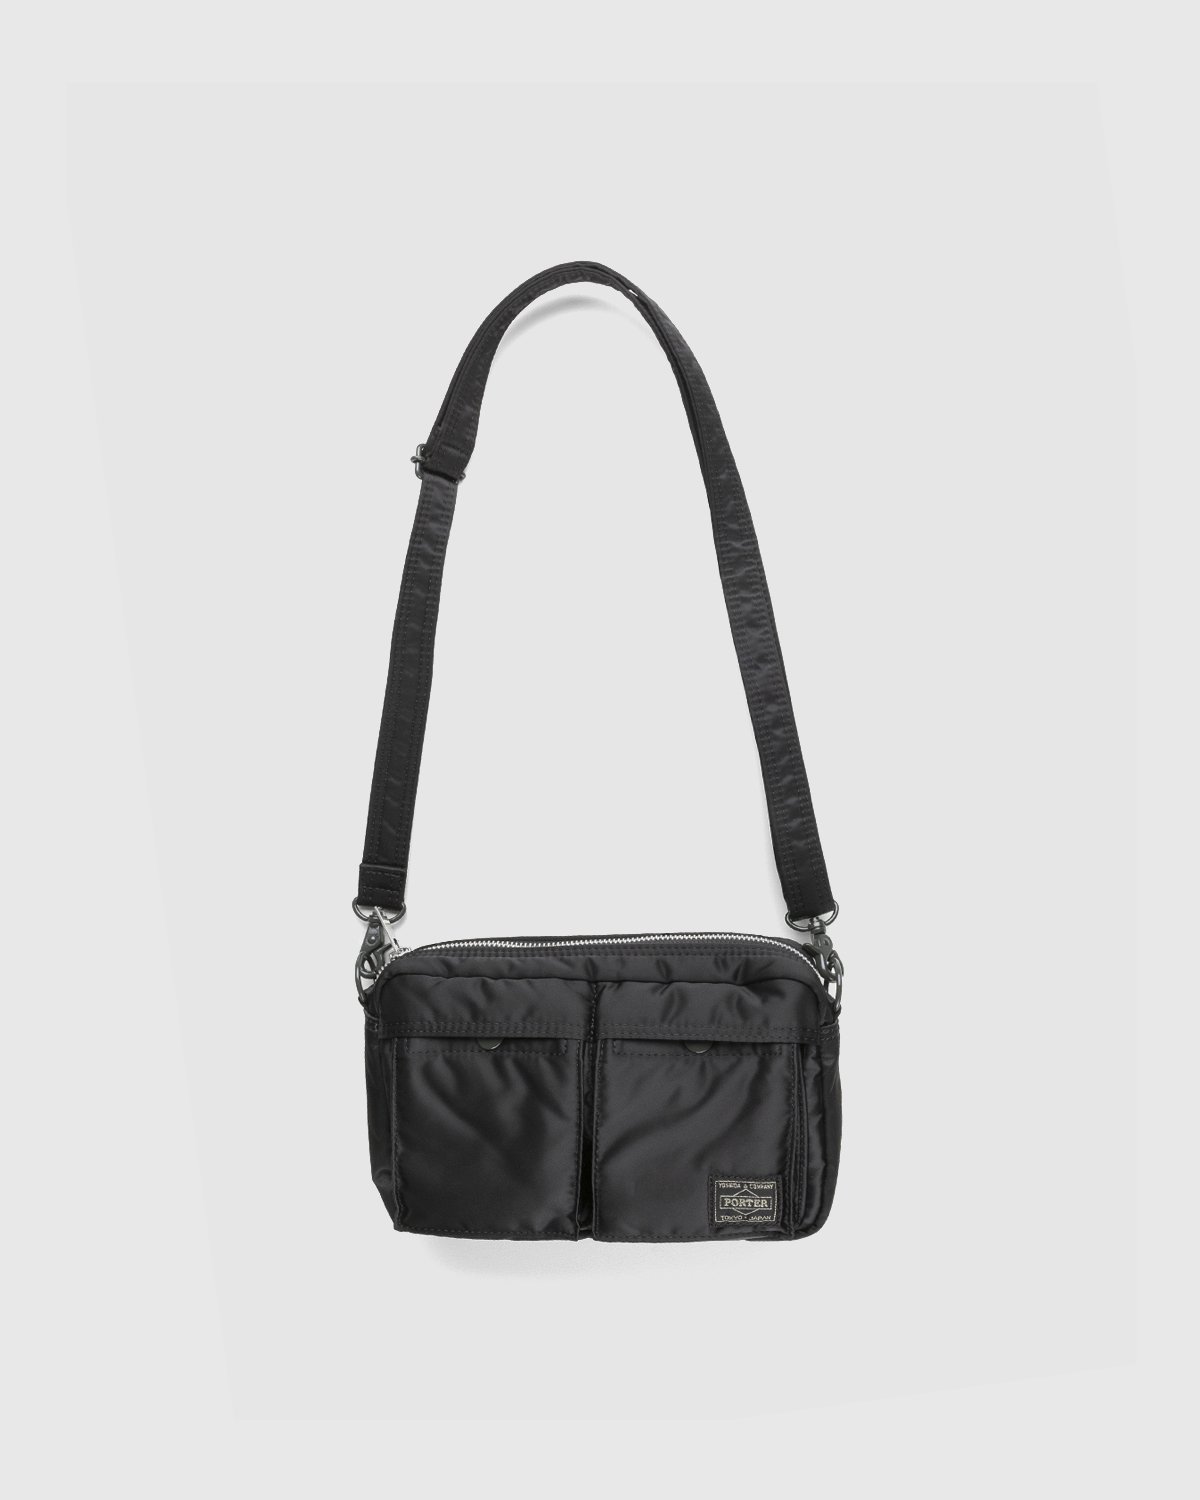 porter-yoshida & co. tanker new shoulder bag (olive) 622-69125-30 